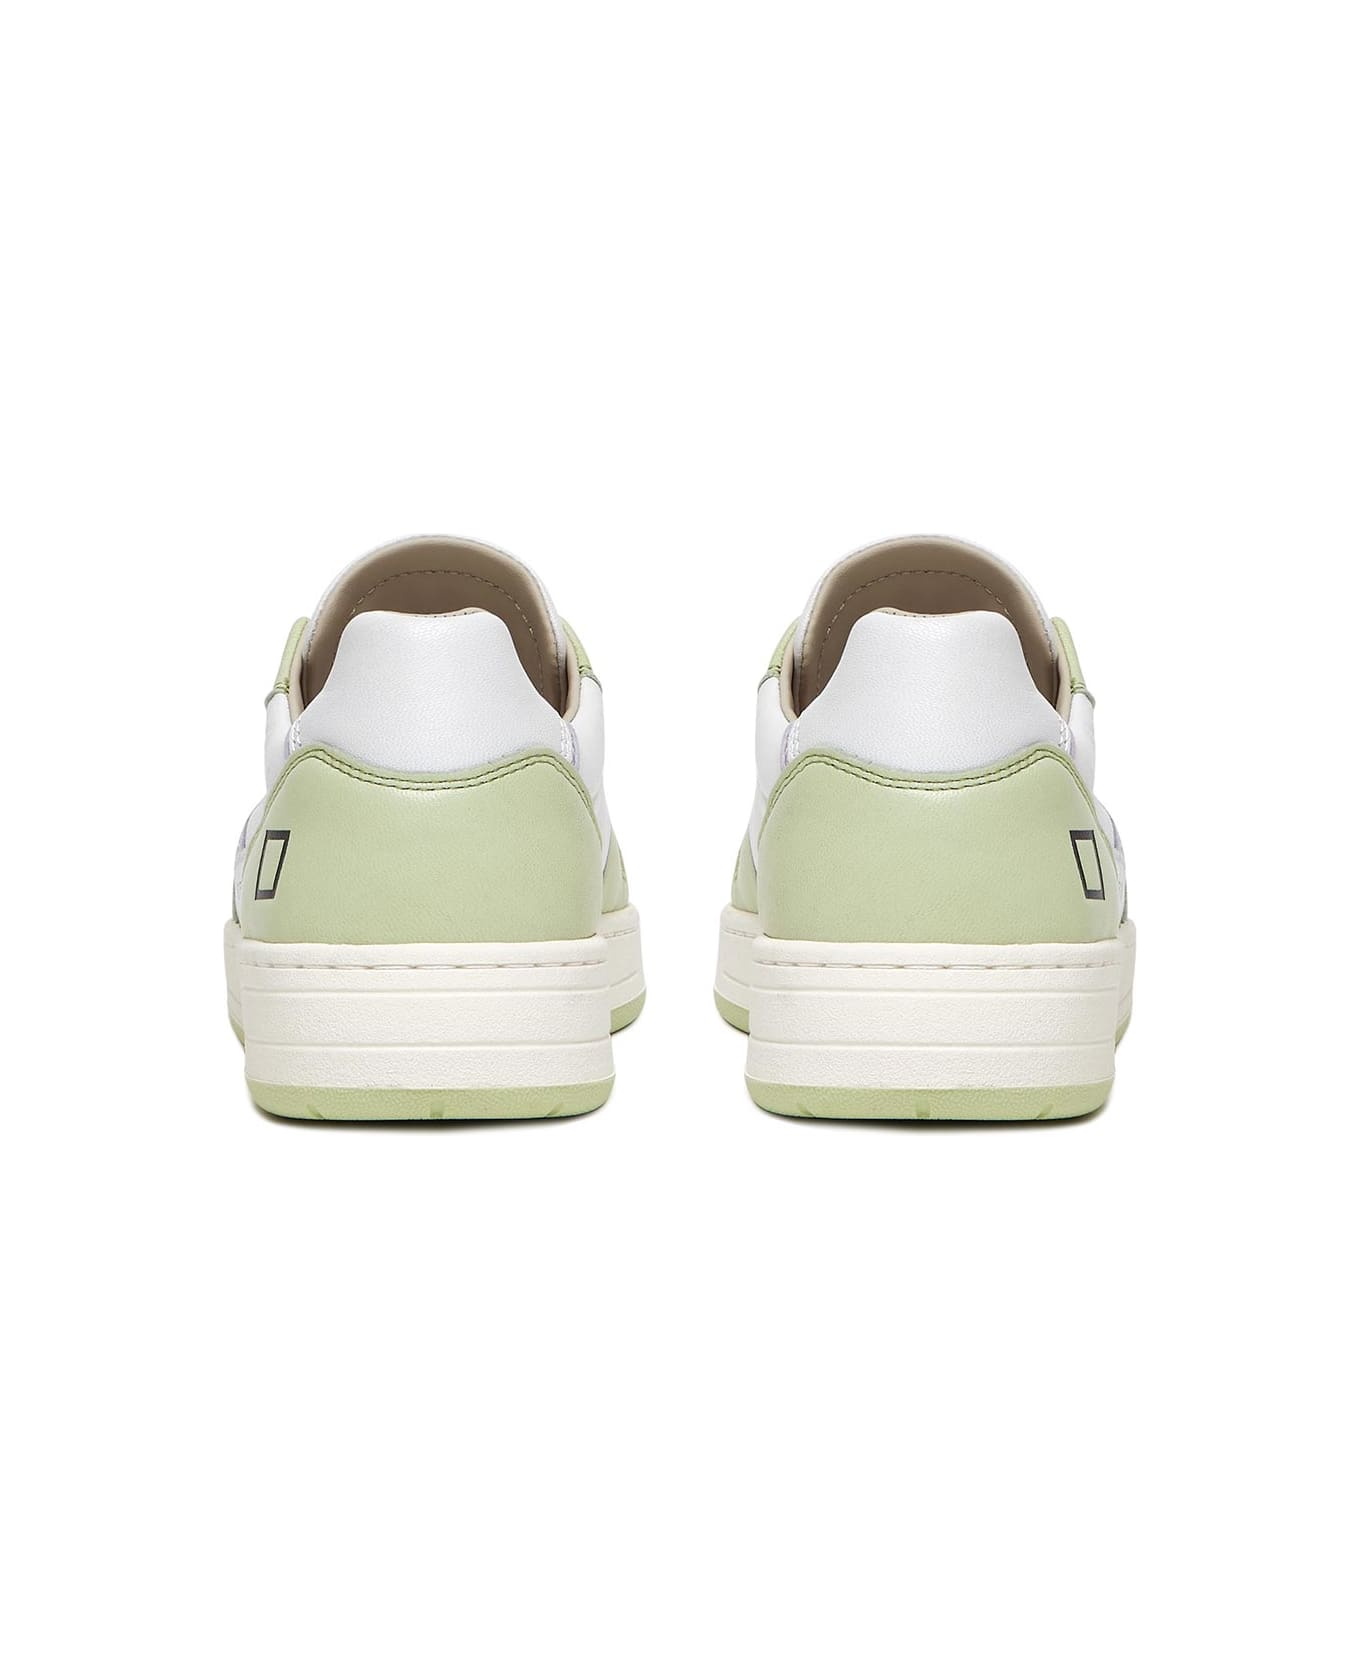 D.A.T.E. Court 2.0 Soft Mint Sneaker - WHITE MINT スニーカー